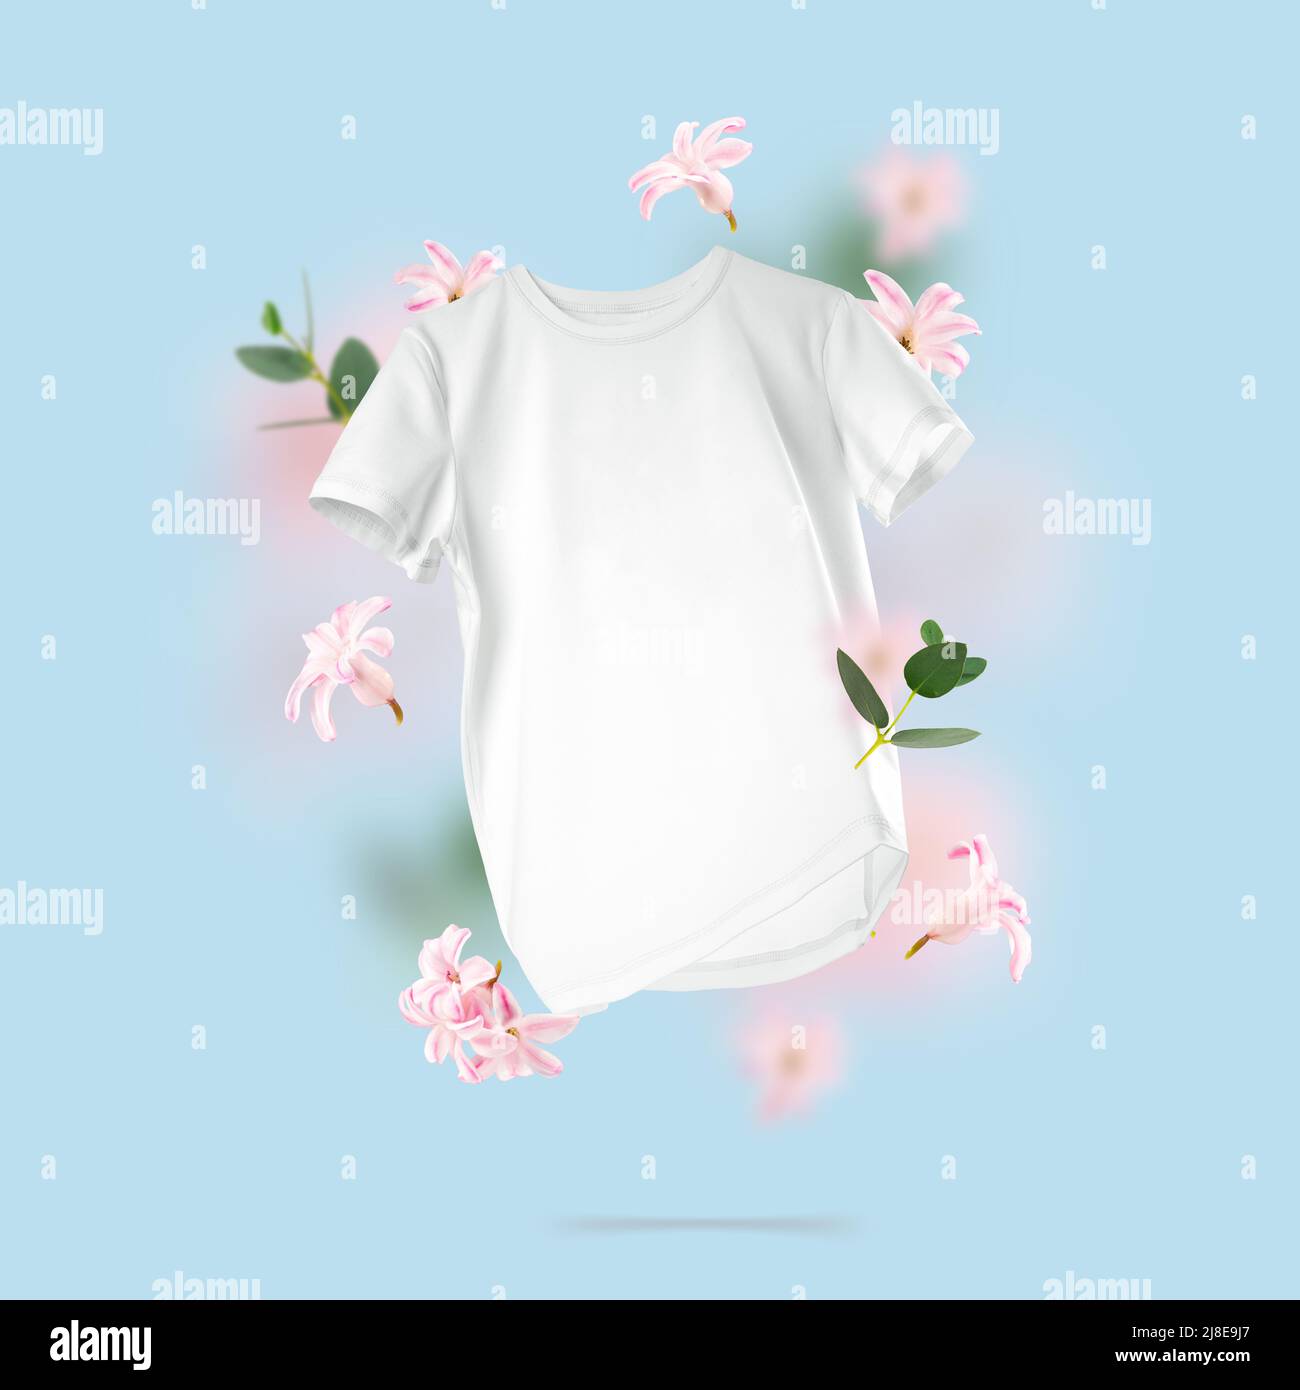 Camiseta blanca de algodón flotando sobre fondo azul. Composición conceptual de una camiseta unisex en blanco y flores en el aire. Vista frontal de la ropa de marca Foto de stock